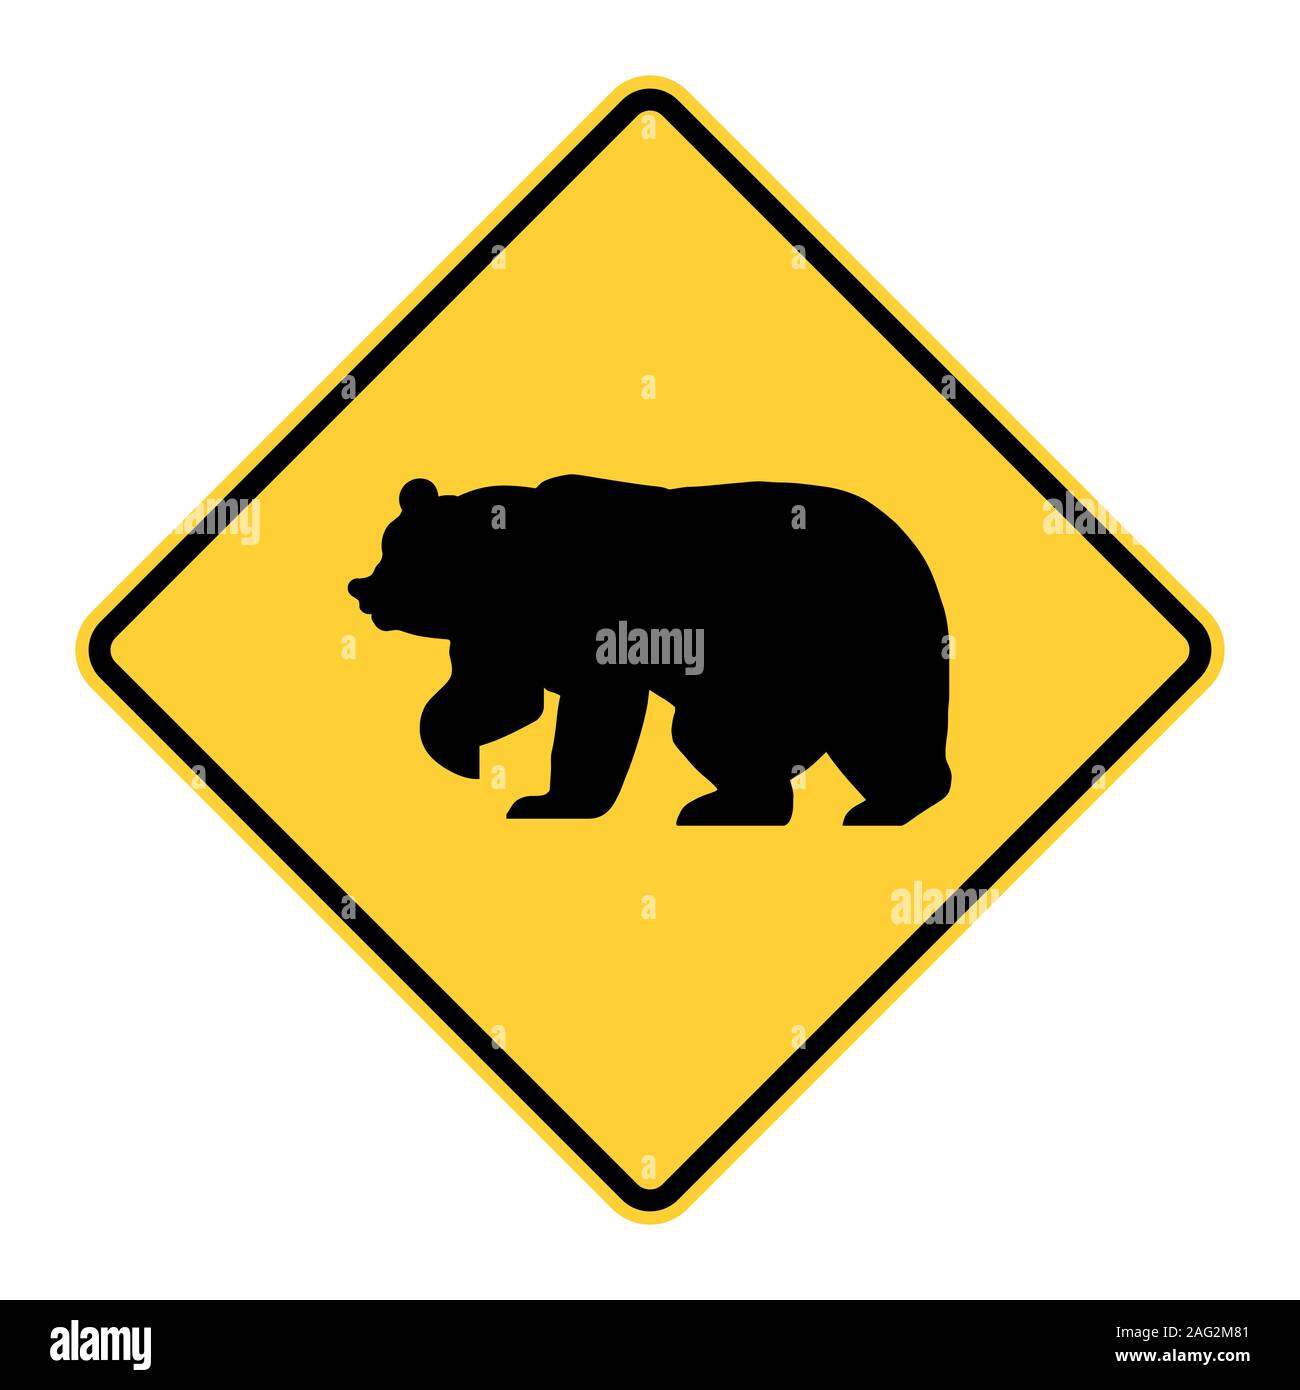 Bear warning road sign Stock Photo